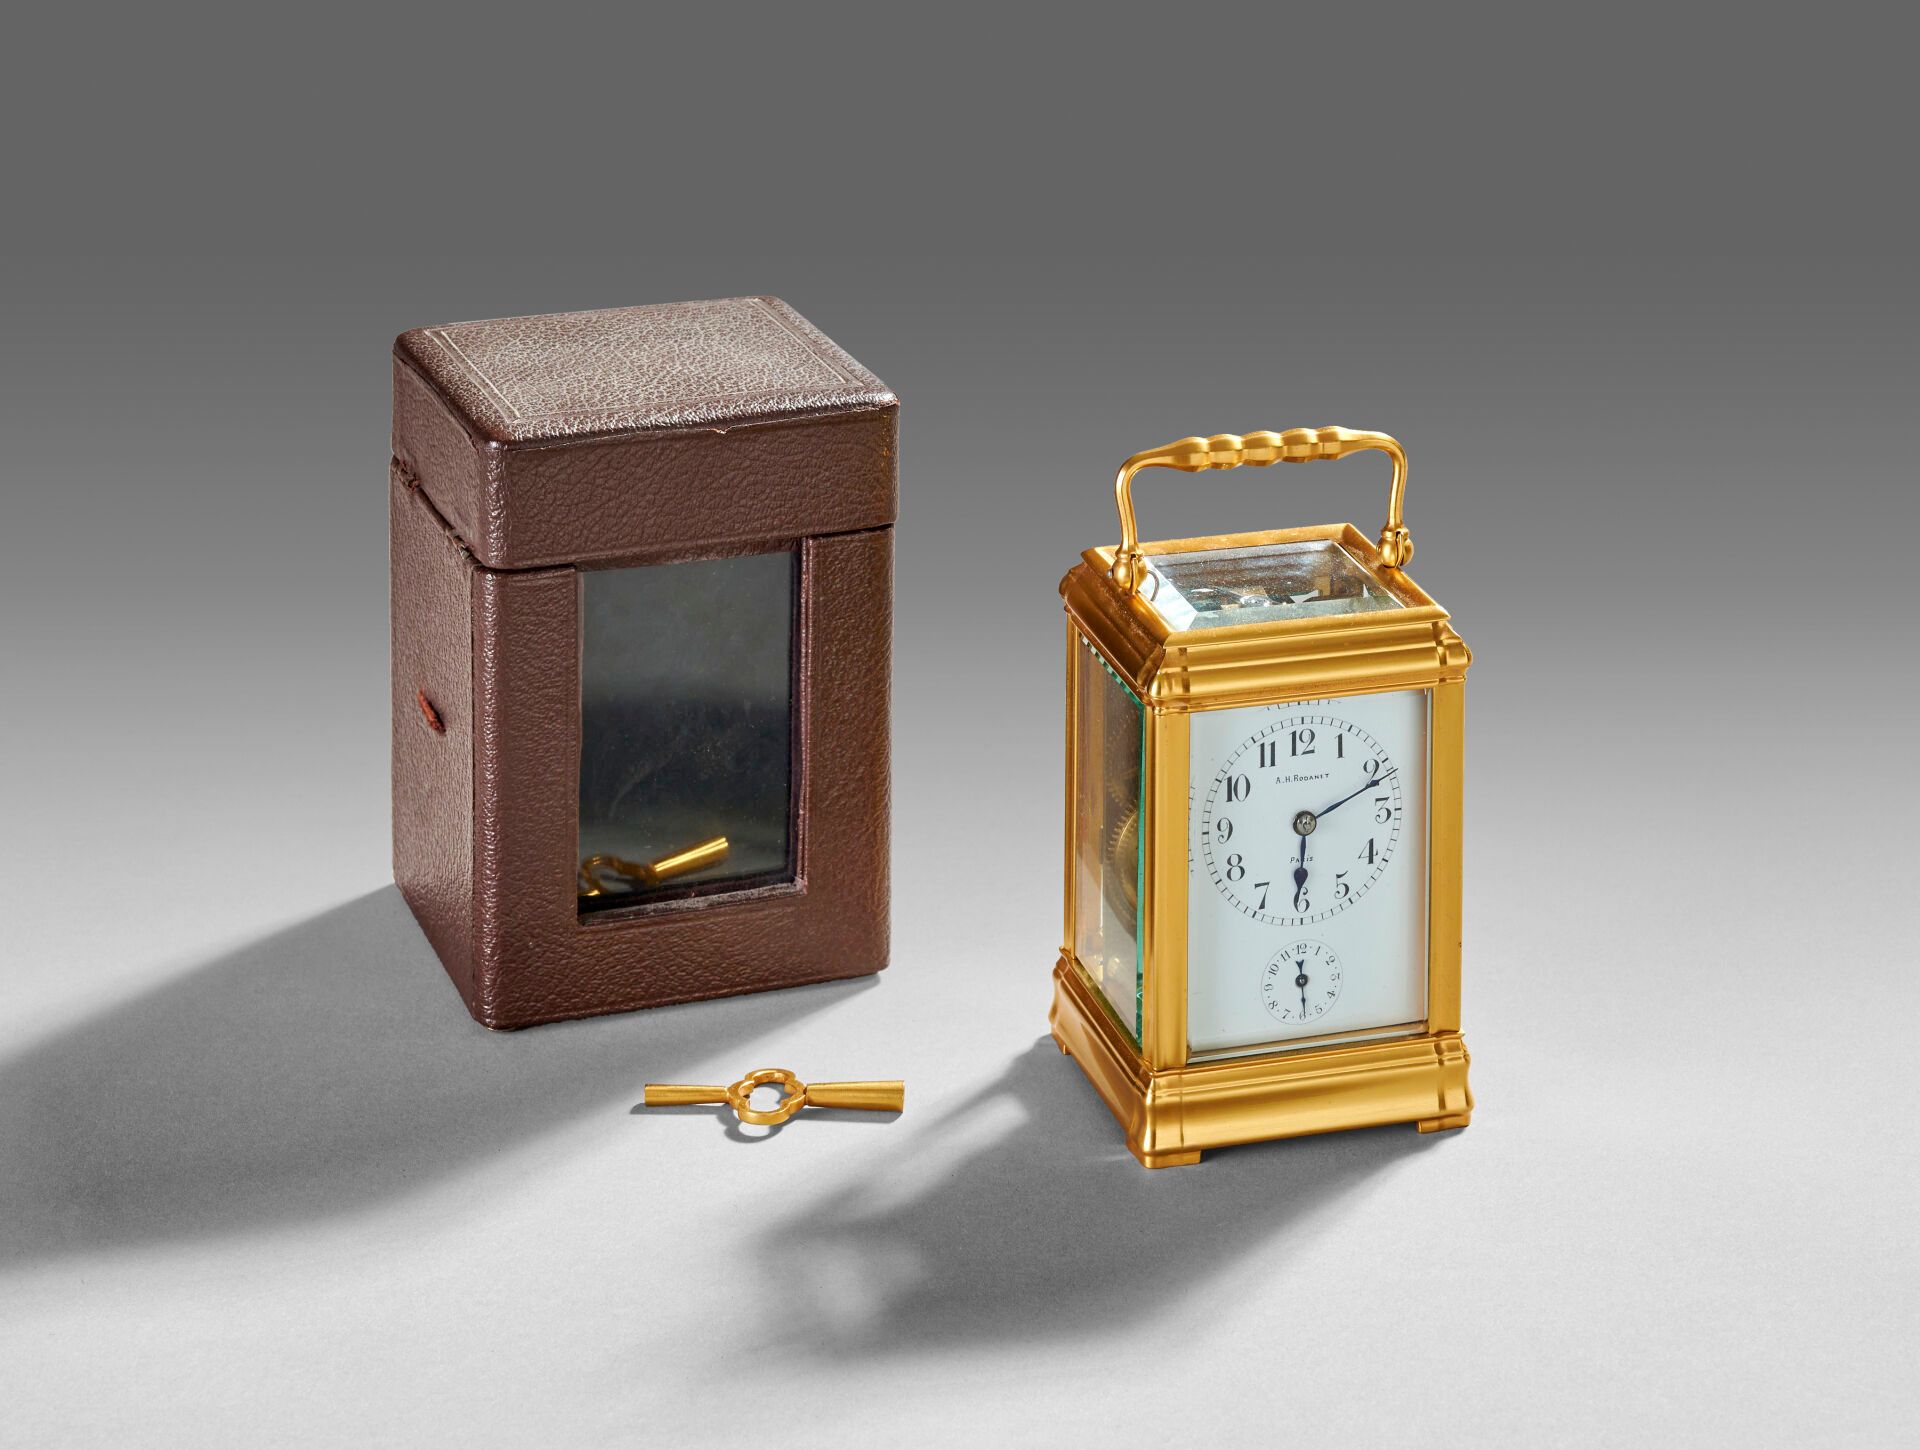 Null A.H. RODANET 在巴黎
镀金青铜和黄铜制成的旅行或军官 "笼子 "钟。
蓝钢指针。小表盘上有闹钟。 
具有闹铃和报时功能。 
机芯编号为 5&hellip;